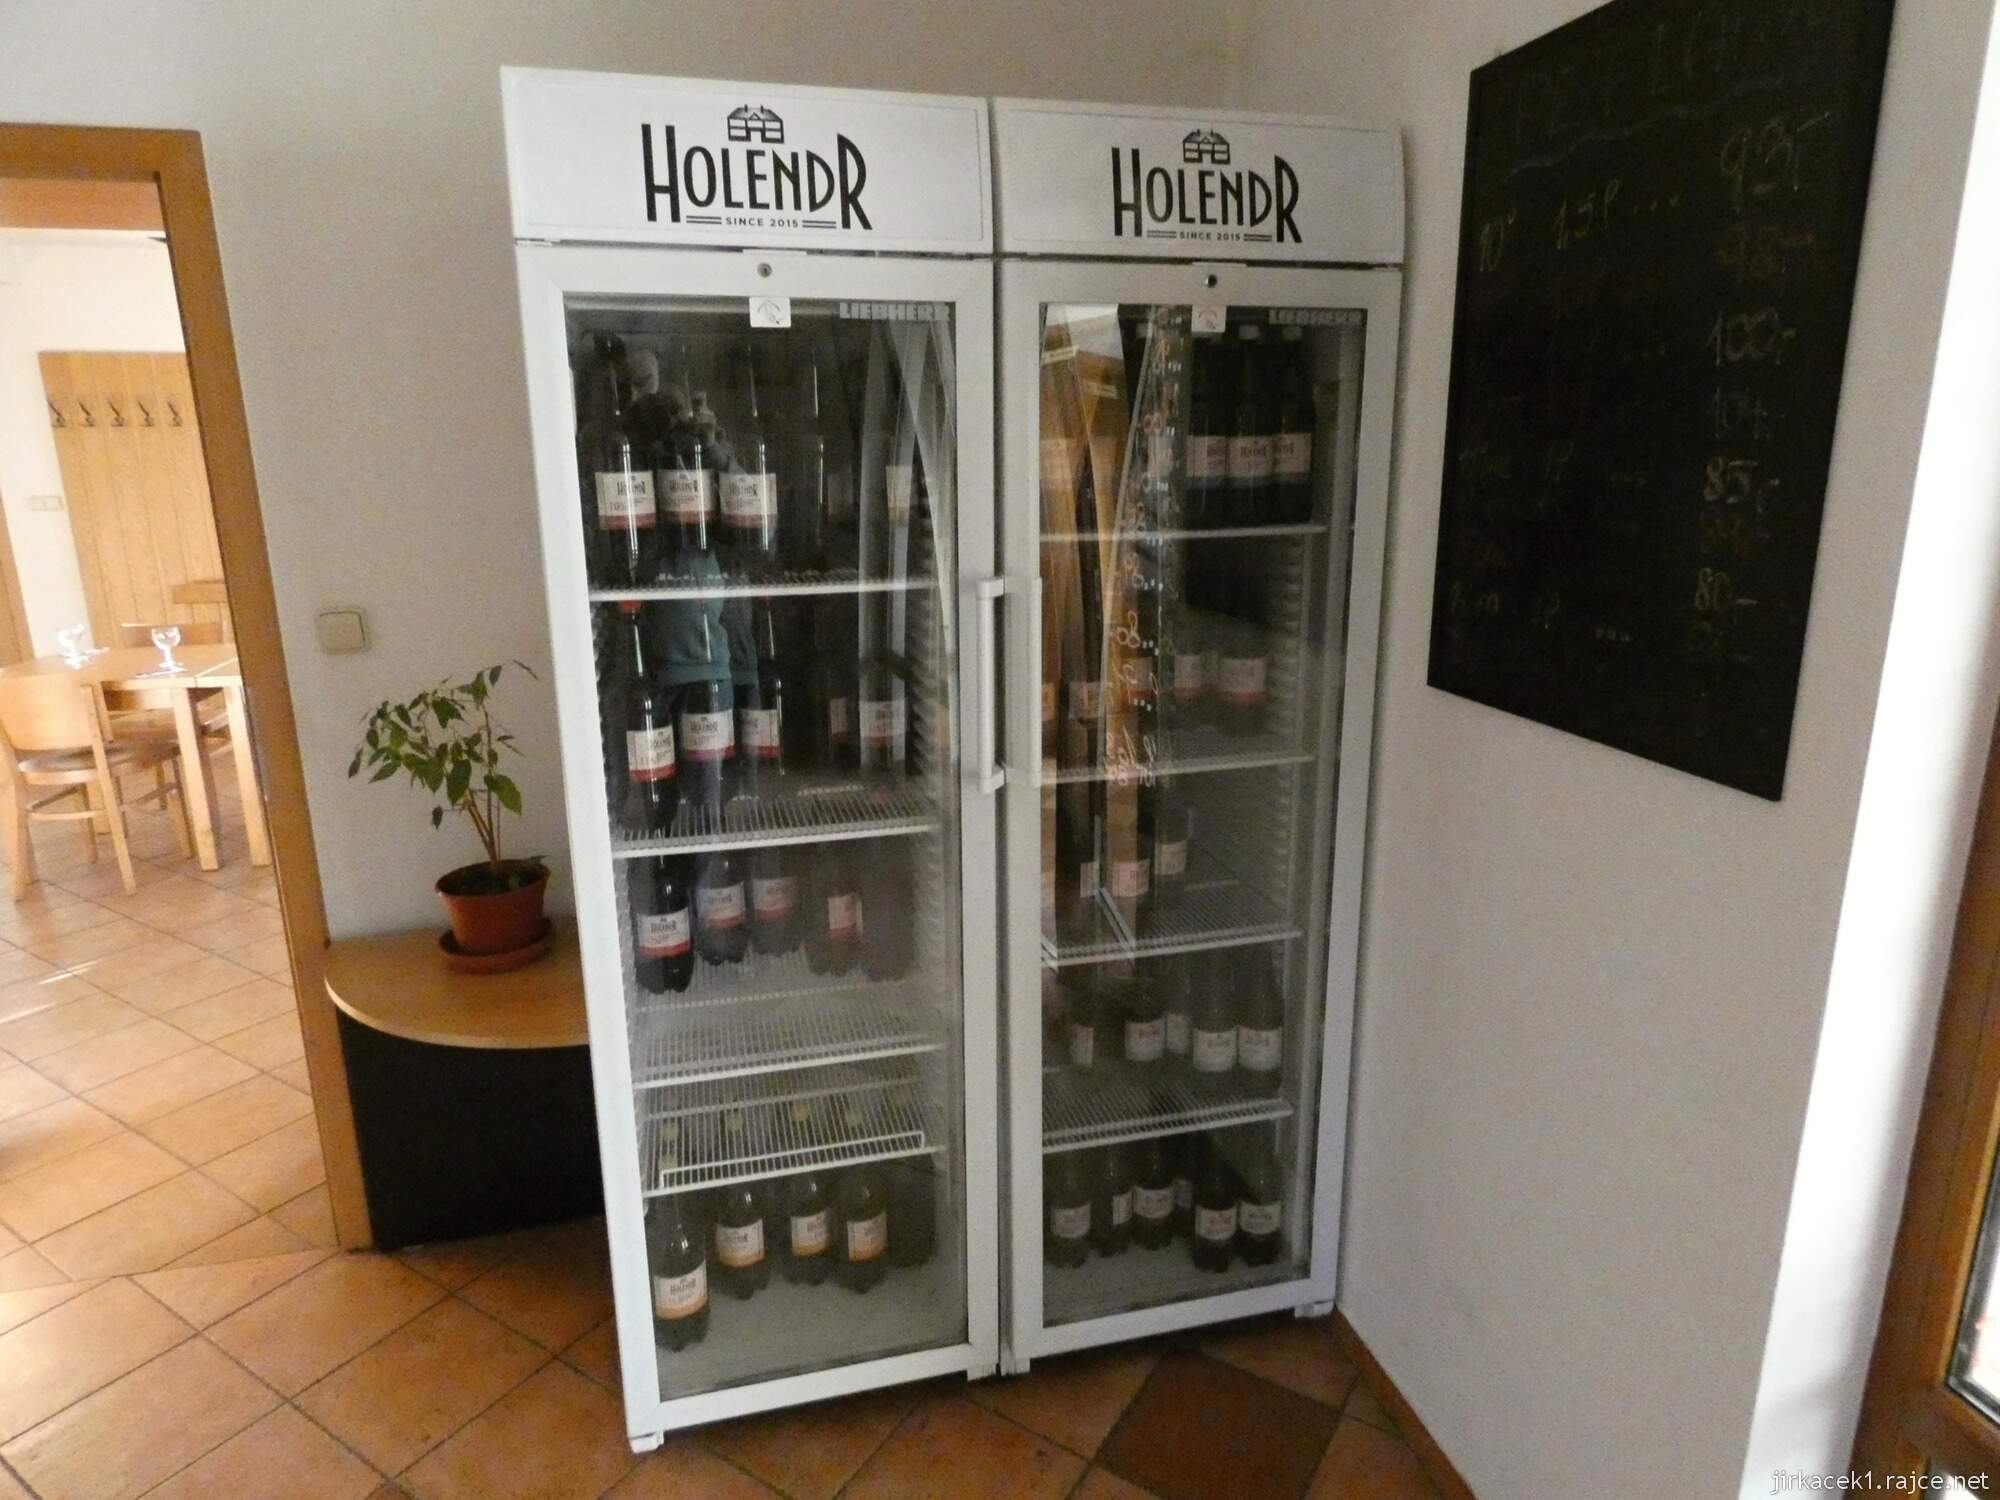 E - Valašské Meziříčí - pivovar Holendr 06 - lednice s pivy u vchodu